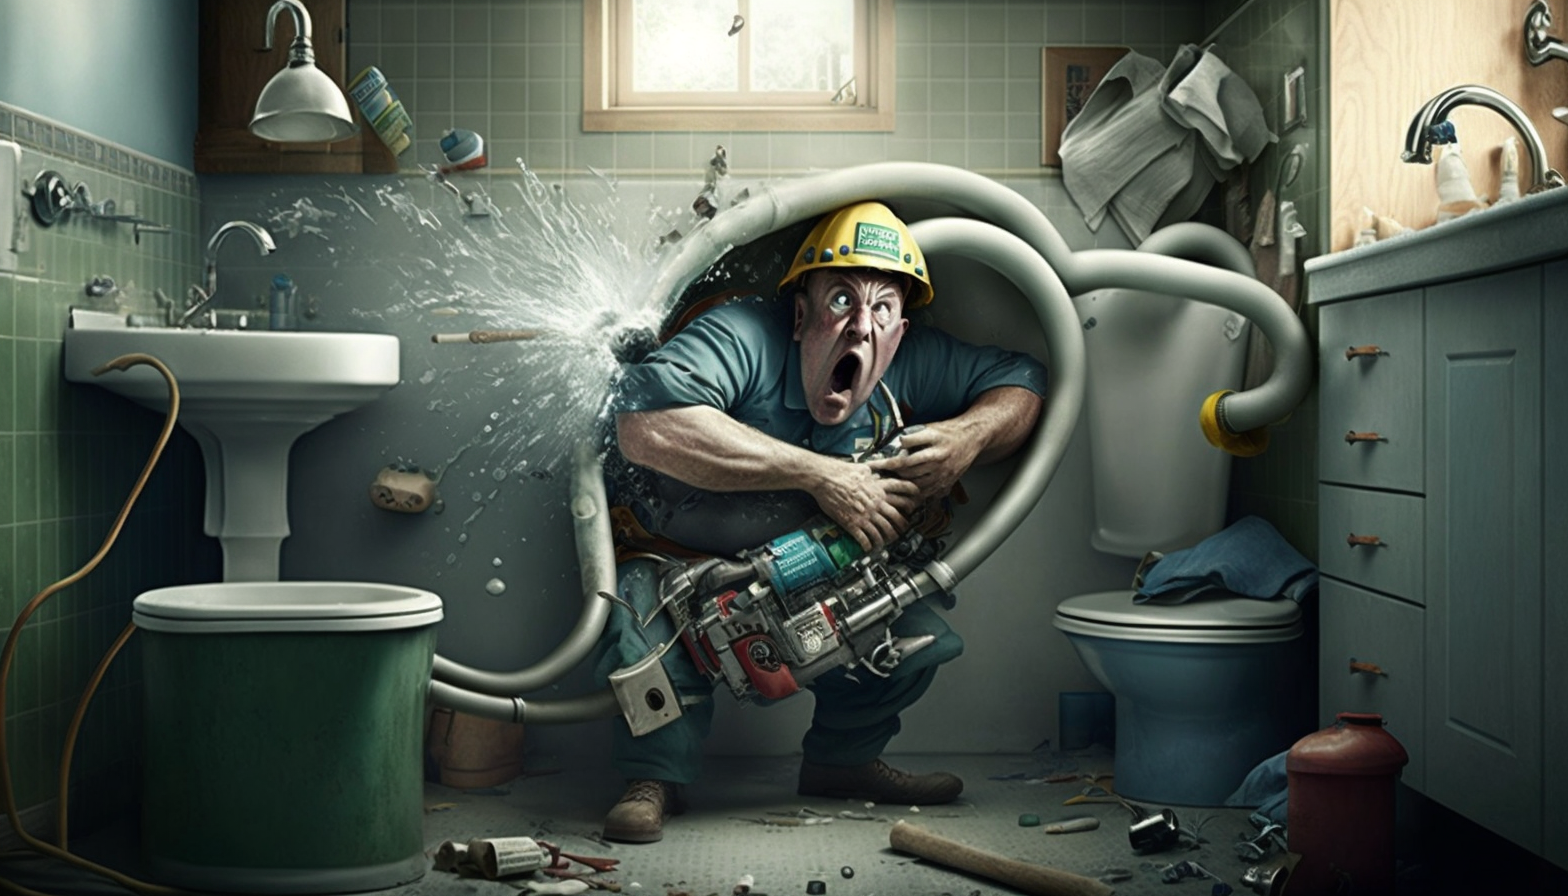 emergency plumbing tips